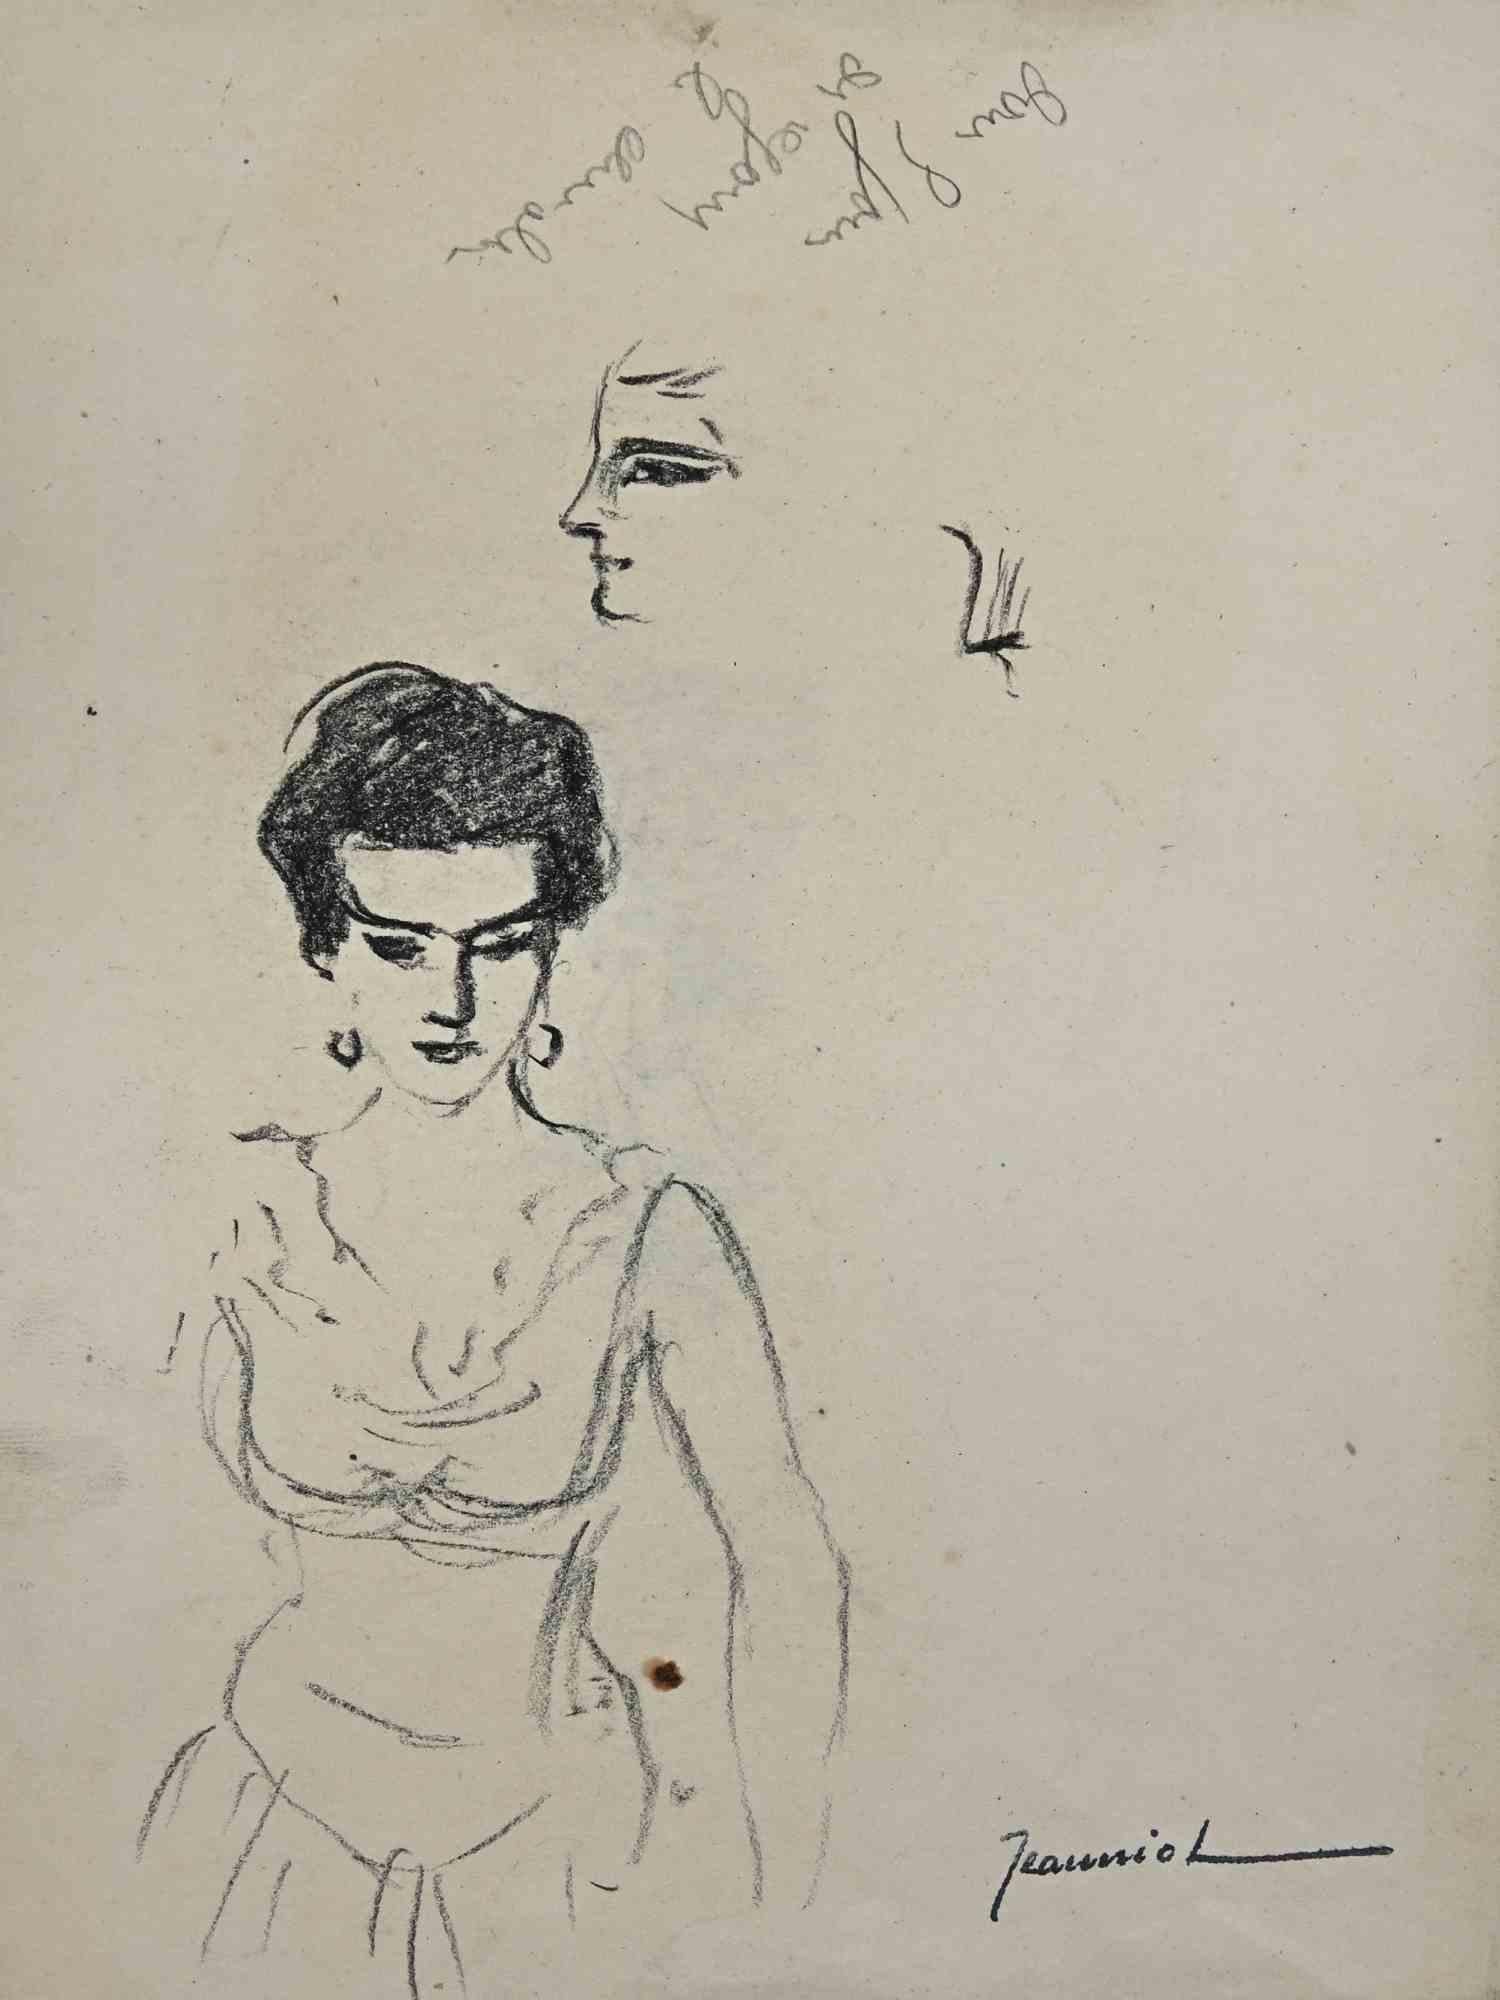 Das junge Mädchen ist eine Original-Zeichnung auf Papier des Malers Pierre Georges Jeanniot (1848-1934).

Zeichnen mit Kohle.

Handsigniert auf der Unterseite.

Guter Zustand mit einigen Stockflecken.

Das Kunstwerk wird durch geschickte und